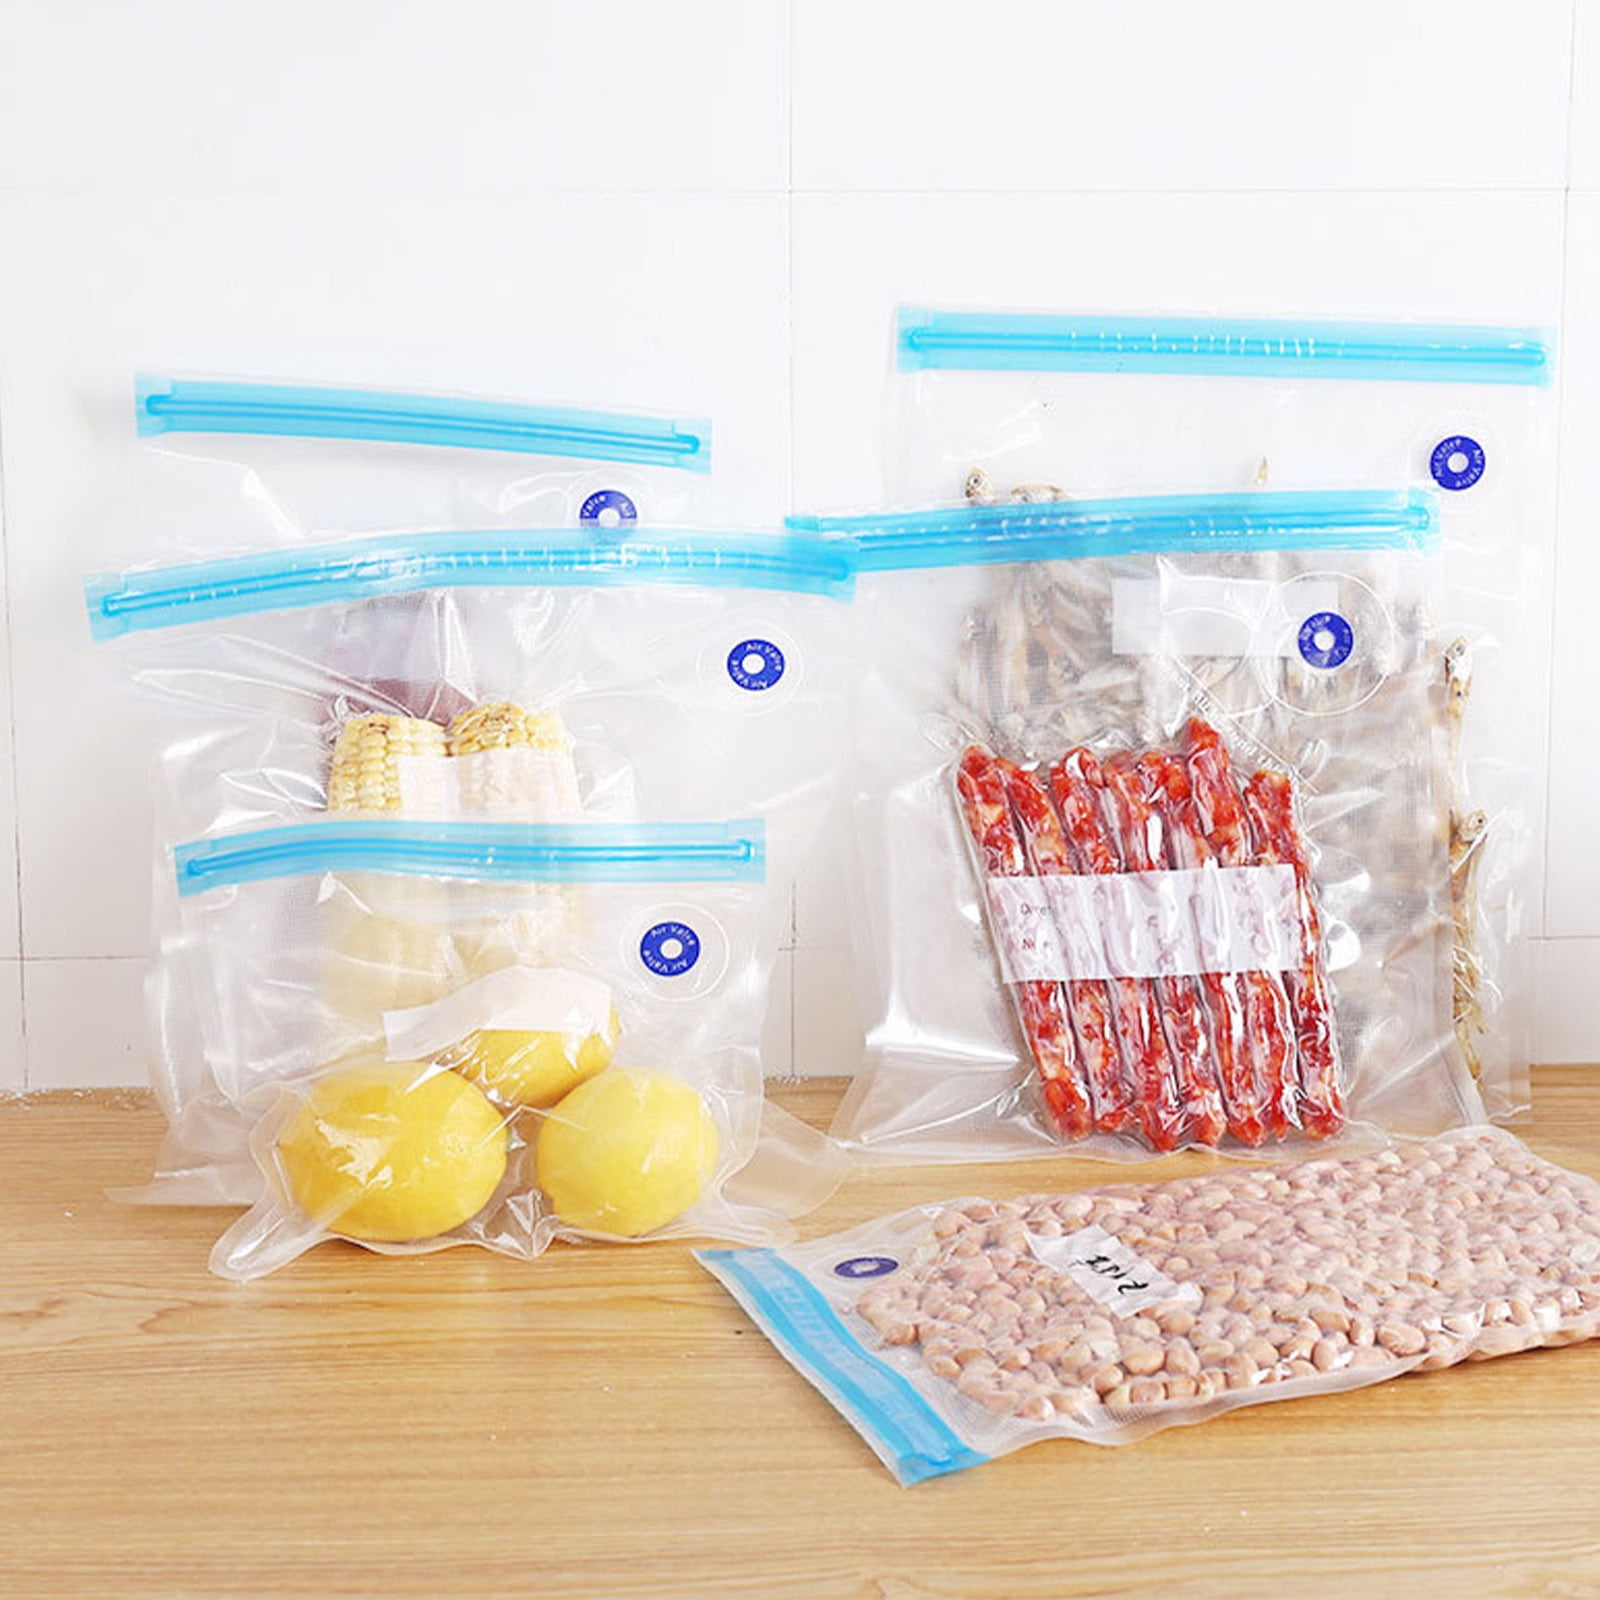 Vacuum Sealer Bags Reusable Food Storage Bag Household Vacuum Food